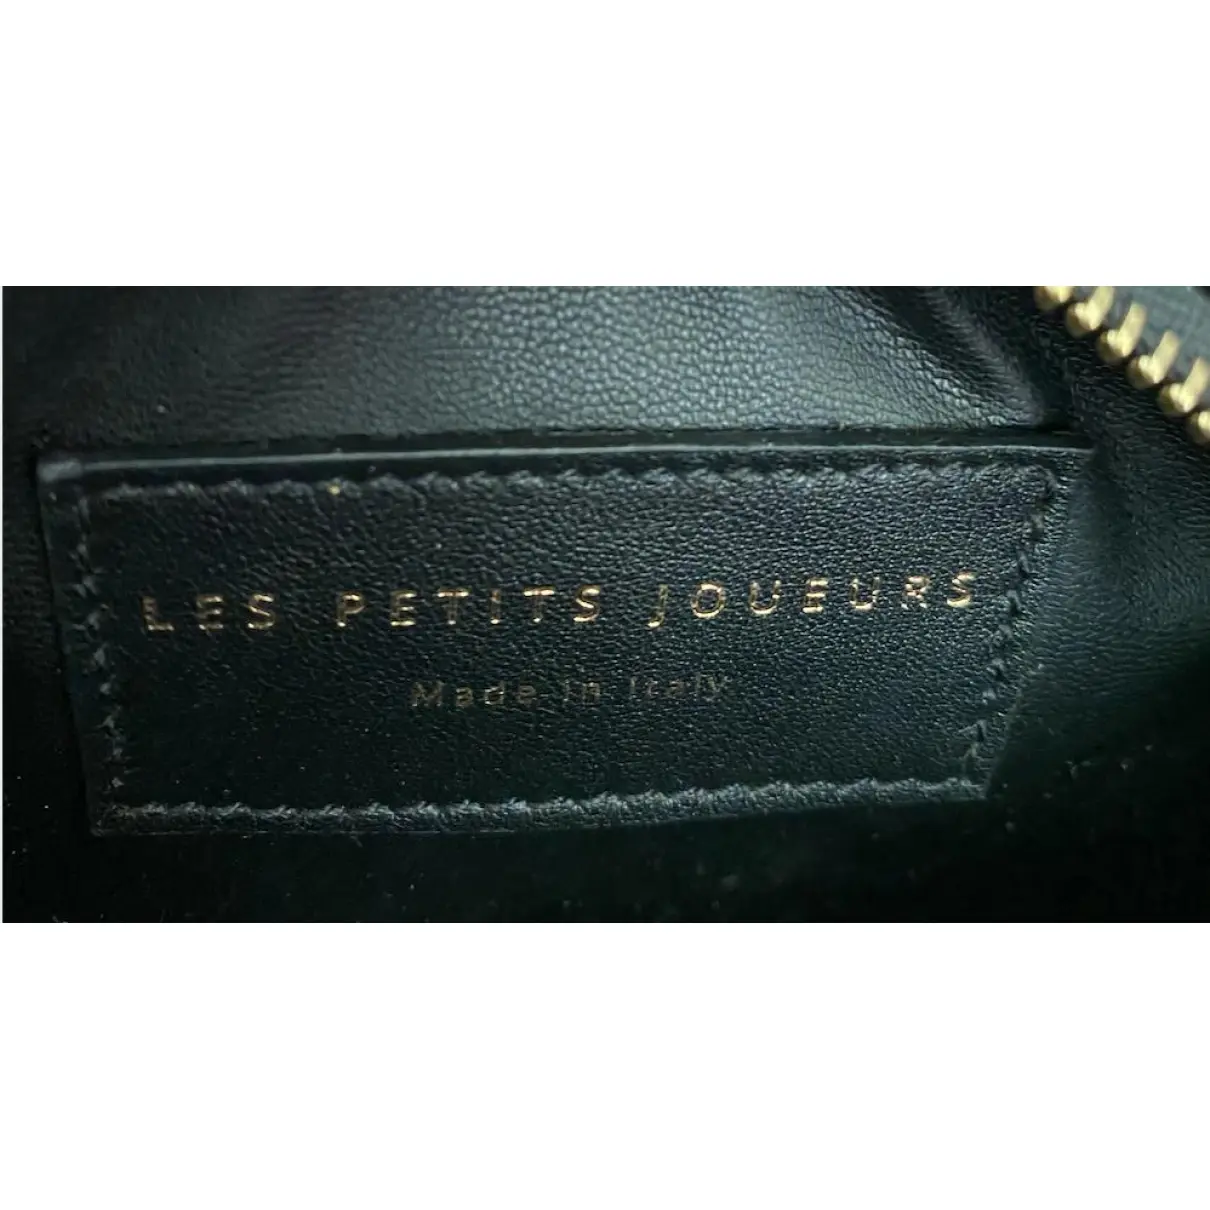 Buy Les Petits Joueurs Leather bowling bag online